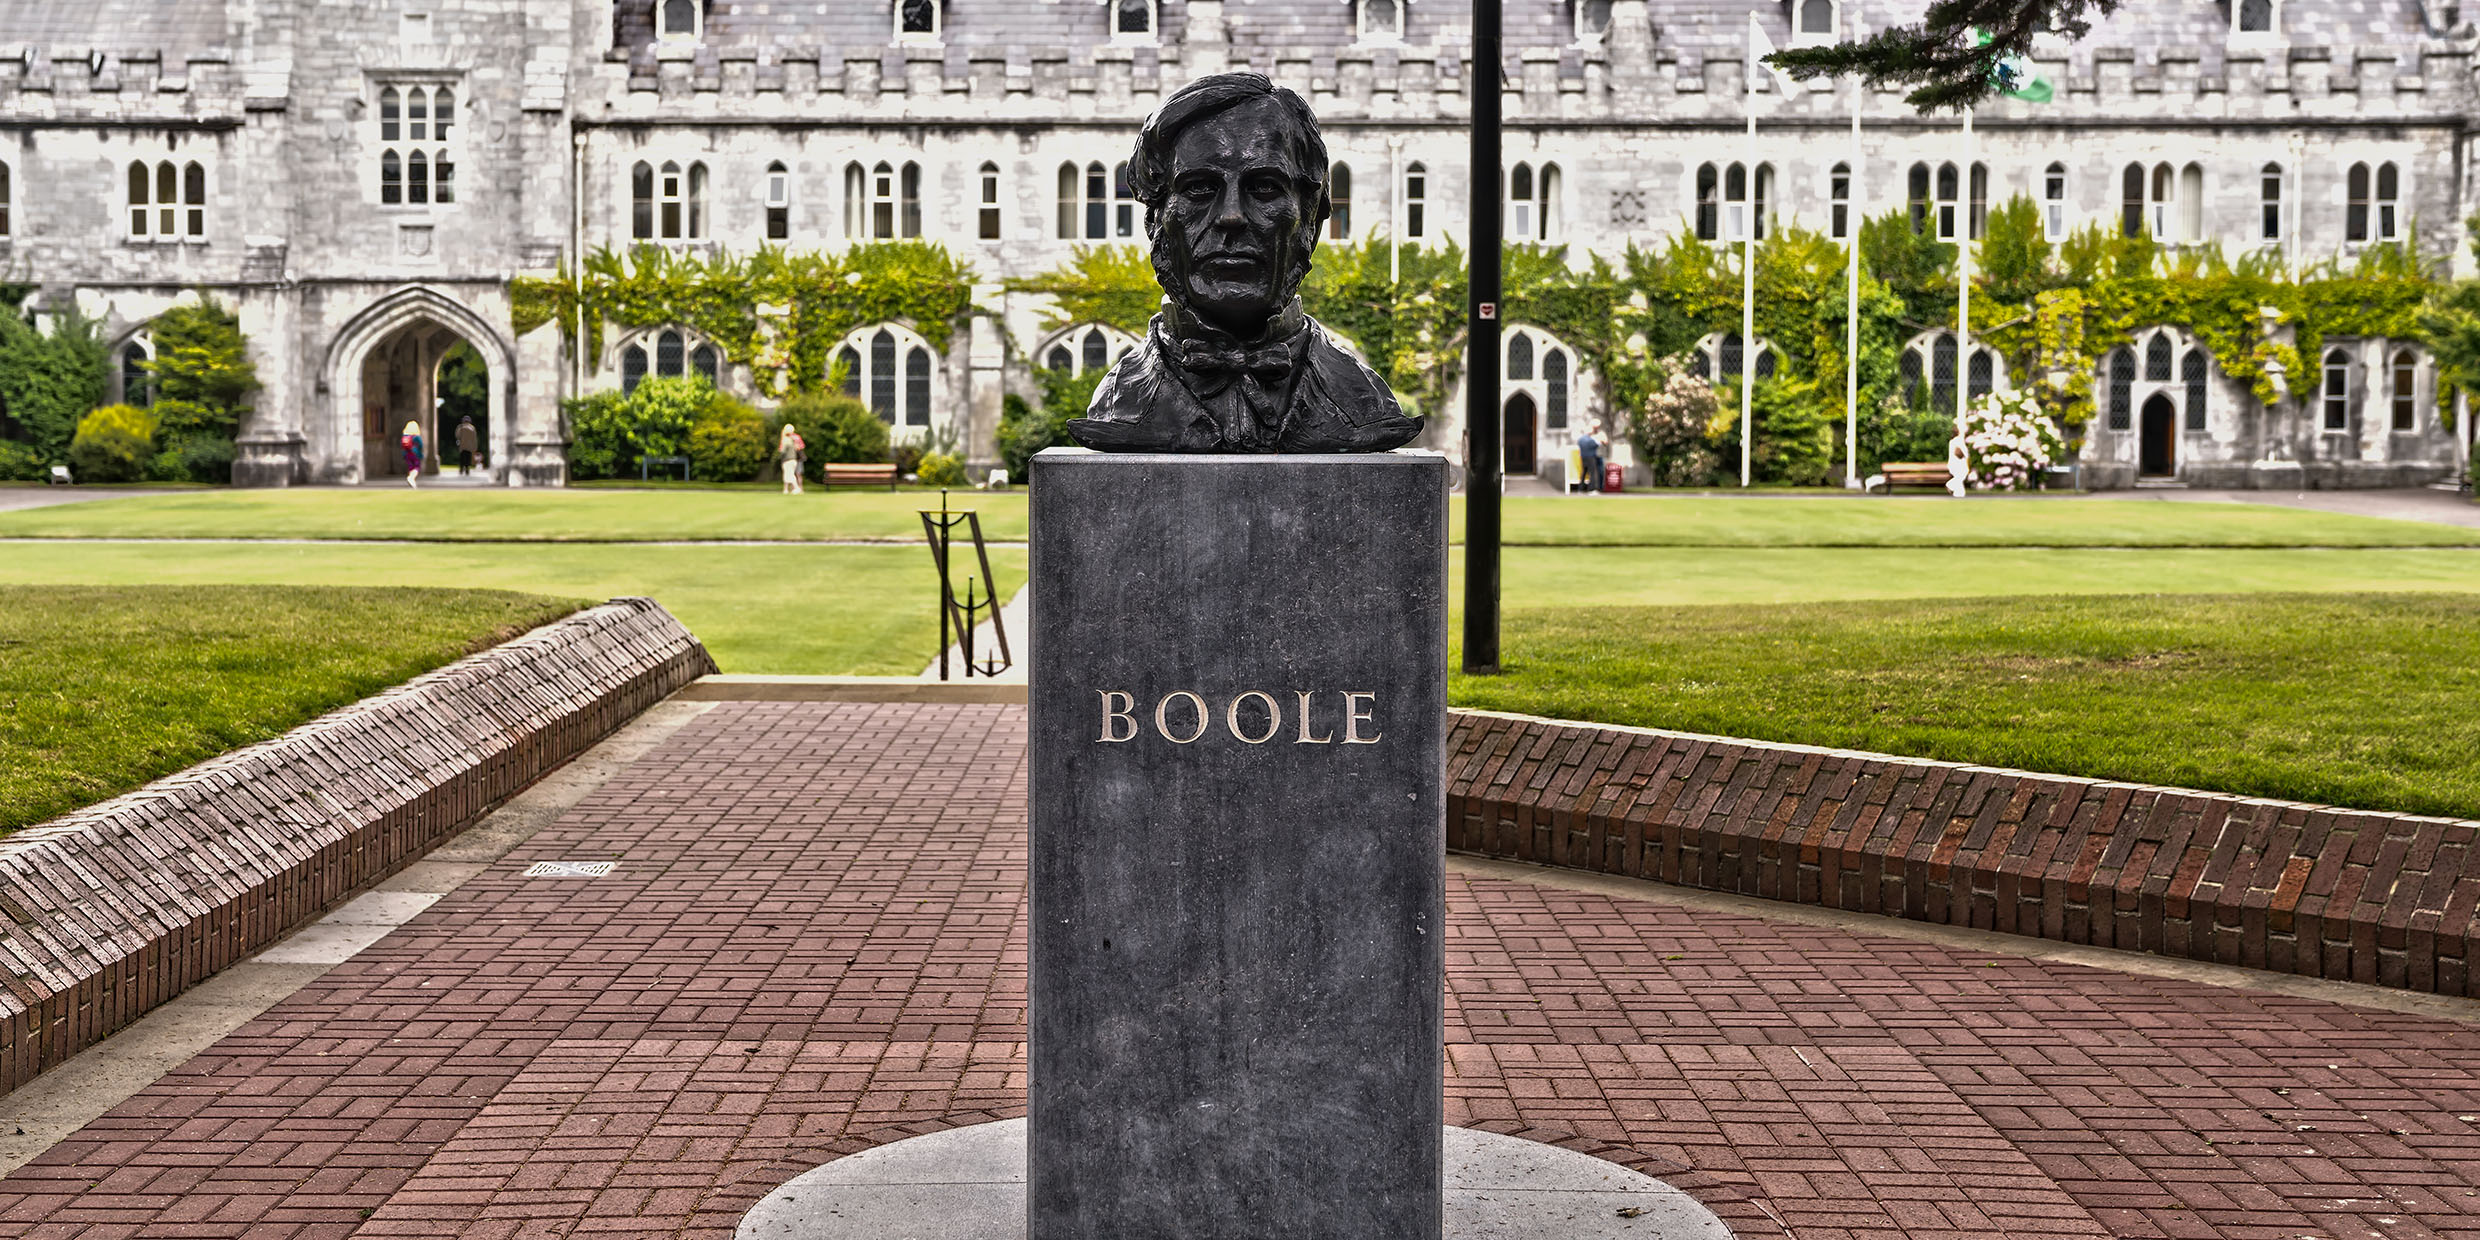 George Boole kimdir? Matematiğe katkıları nelerdir? George Boole'nin eserleri nelerdir?